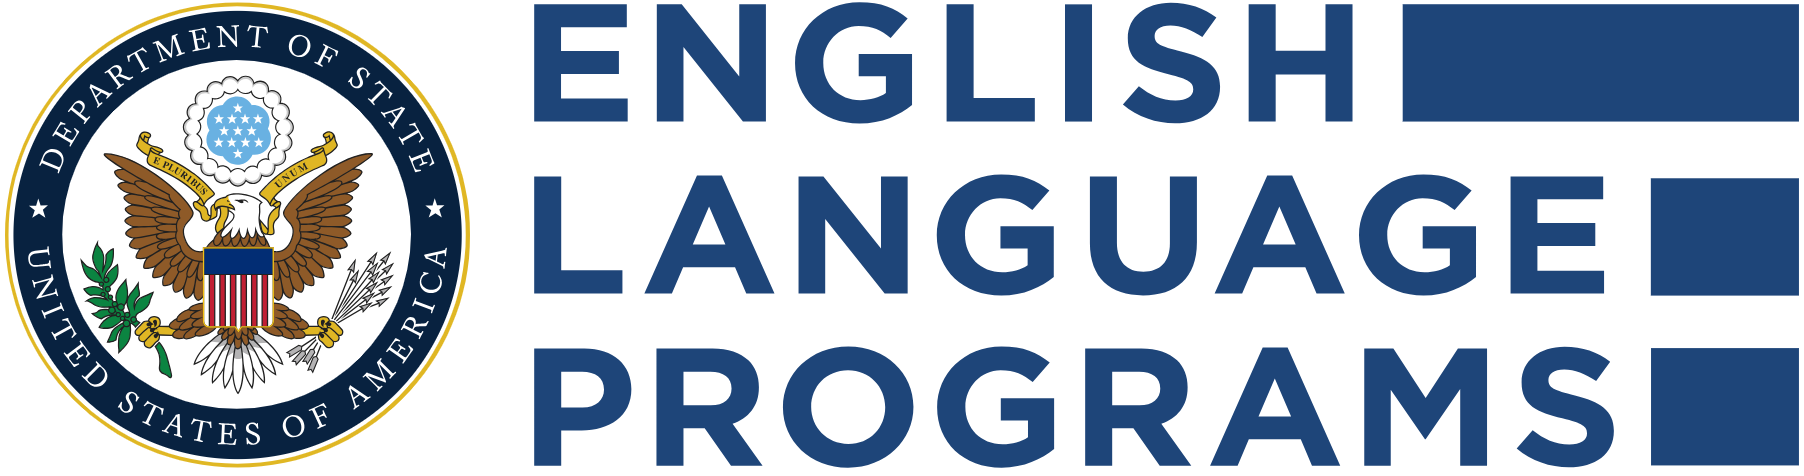 English Language Programs.png